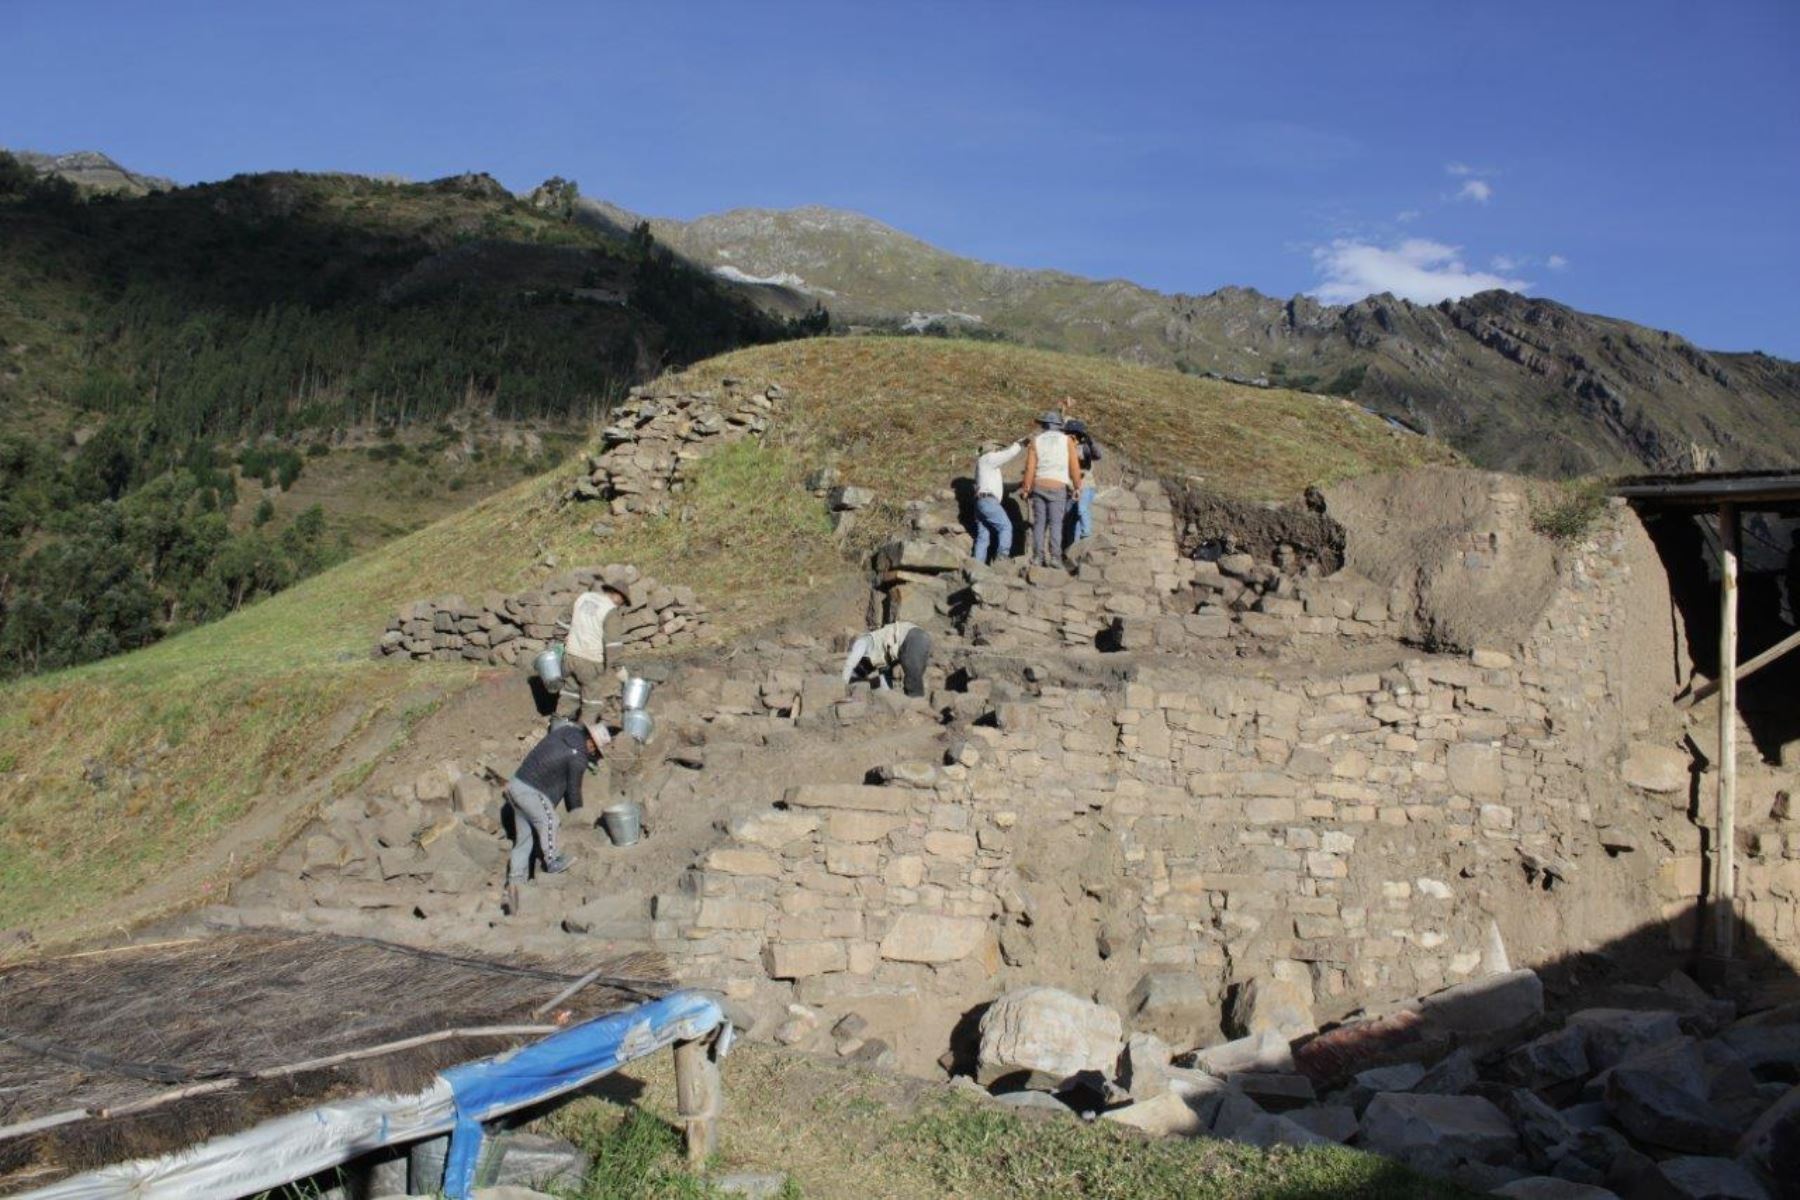 Los hallazgos para incrementar el conocimiento sobre el desarrollo de Chavín de Huántar continuarán porque hasta ahora solo se ha podido explorar e investigar alrededor del 5% del sitio arqueológico, sostuvo John Rick. ANDINA/Difusión